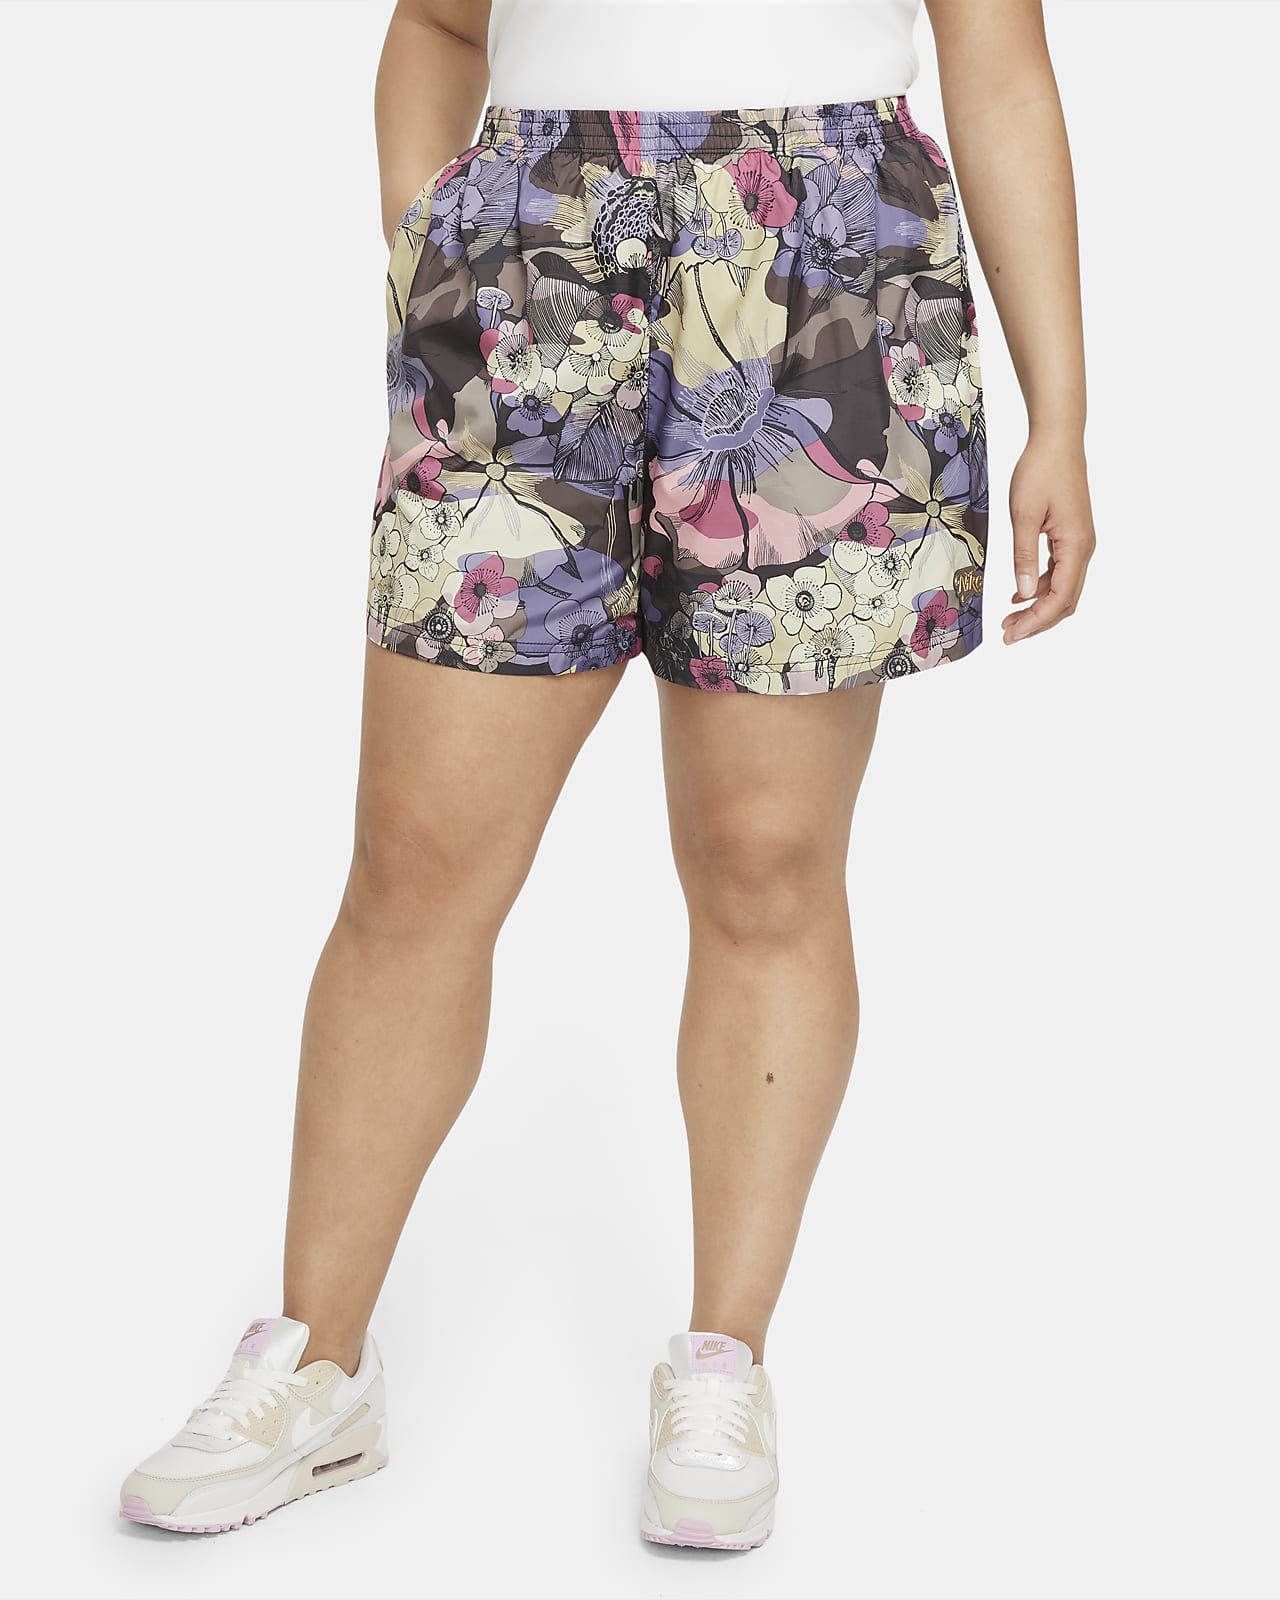 Nike Sportswear Femme Women's Shorts (Plus Size)